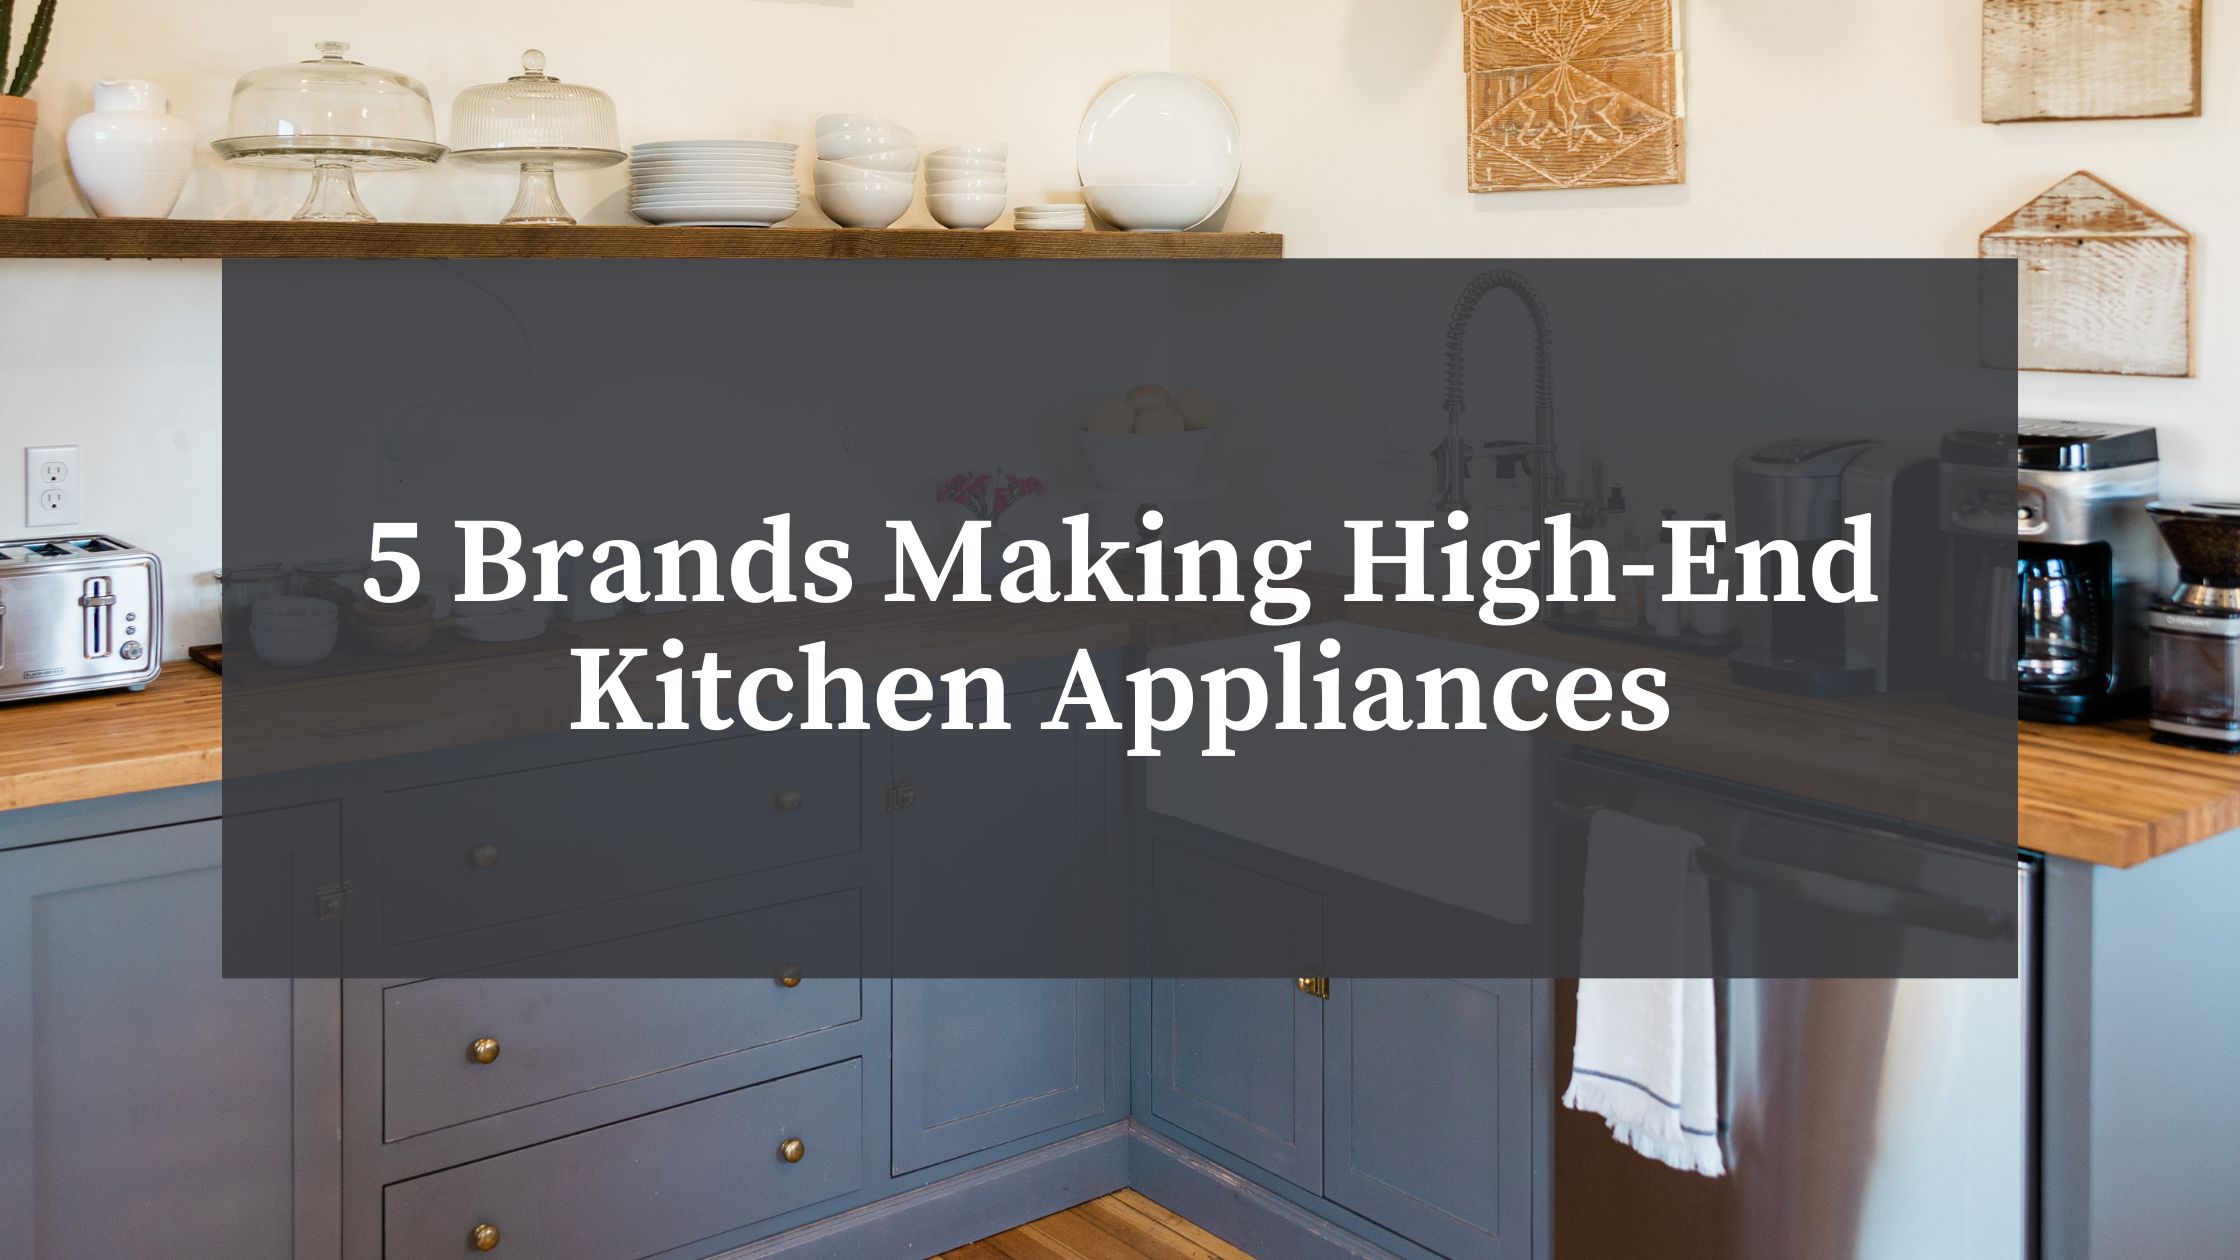 high-end kitchen appliances in a modern home kitchen